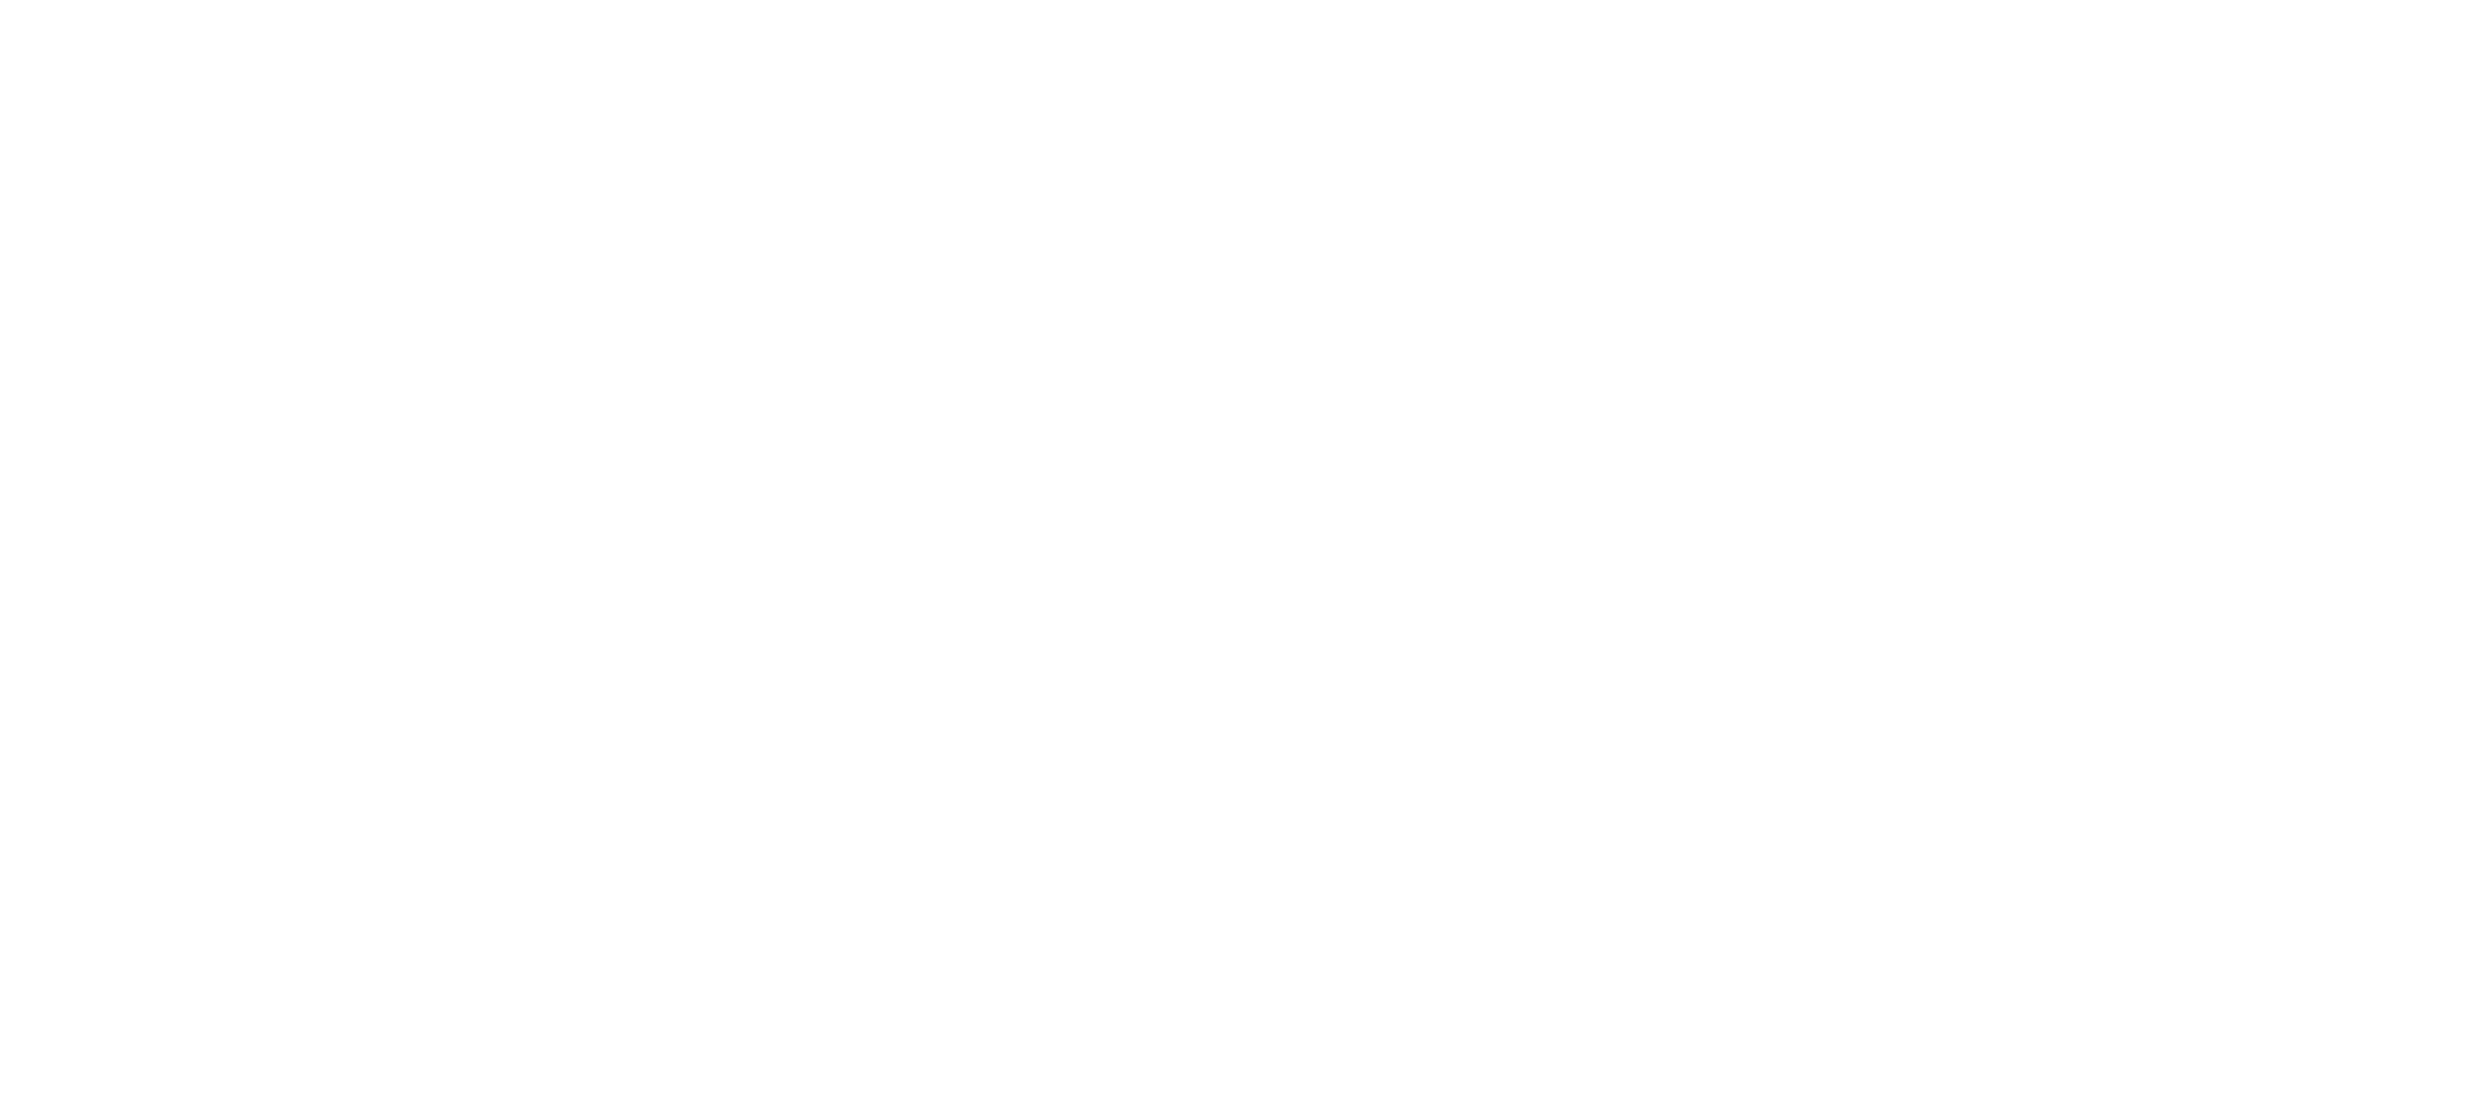 Kicker Fishing Brand